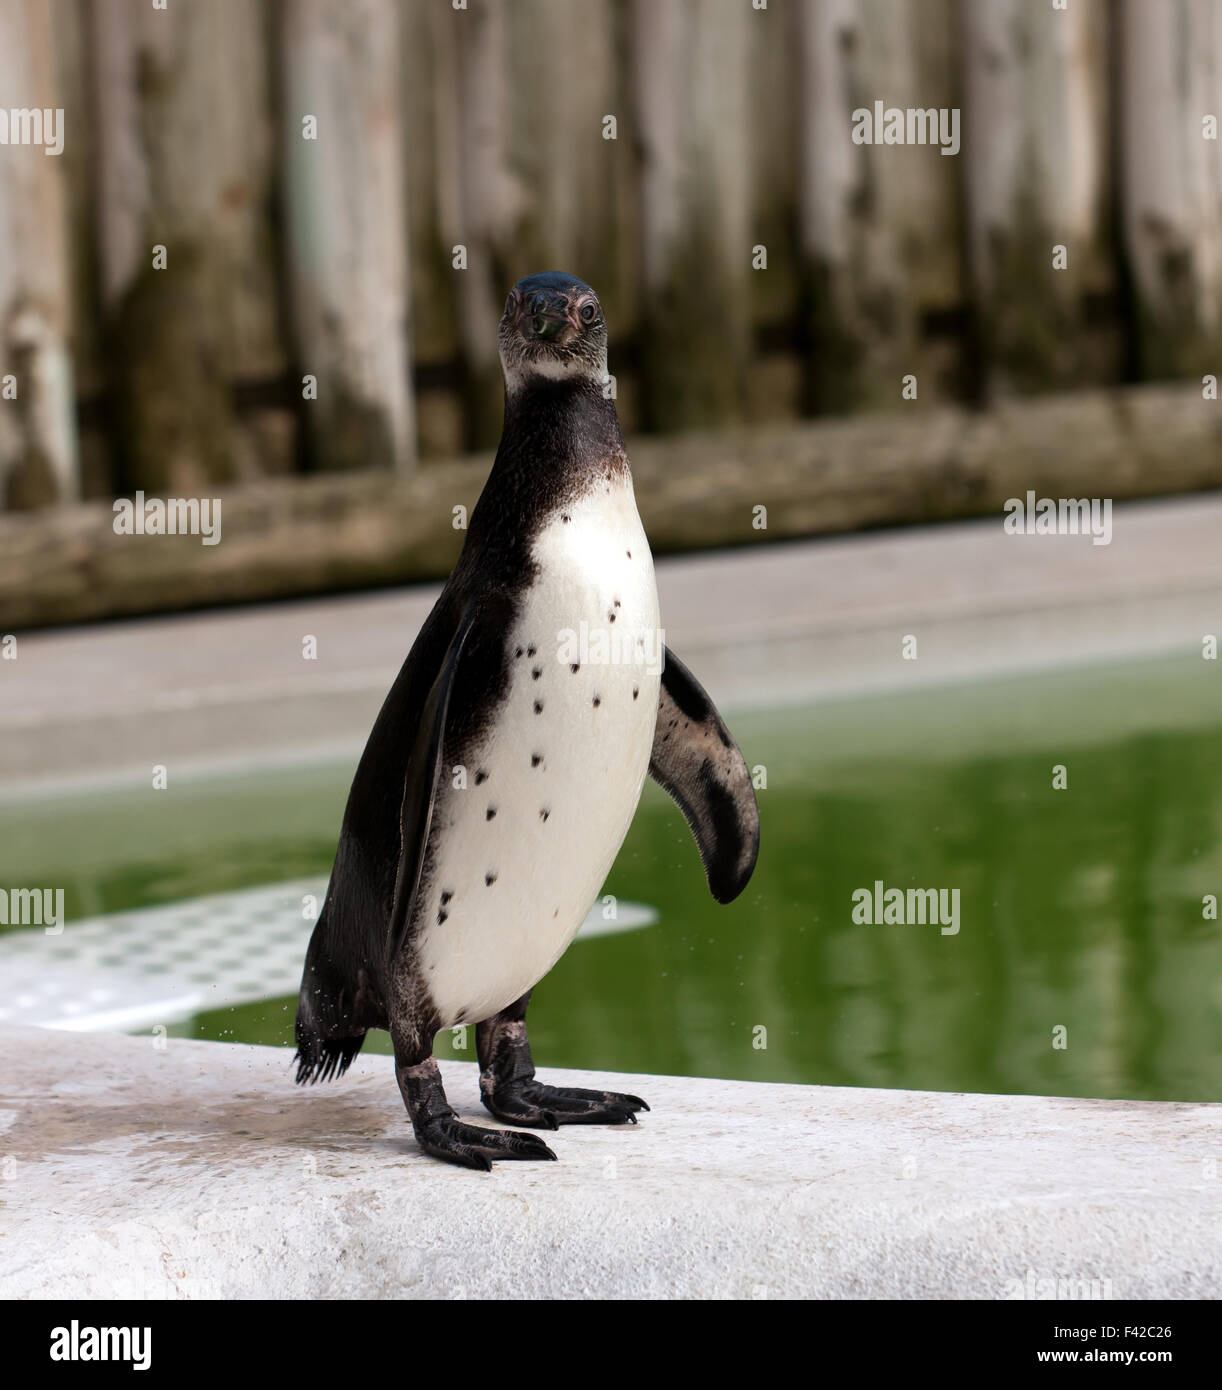 Le Humboldt Penguin posant pour l'appareil photo, à l'Wingham Wildlife Park, Kent Banque D'Images